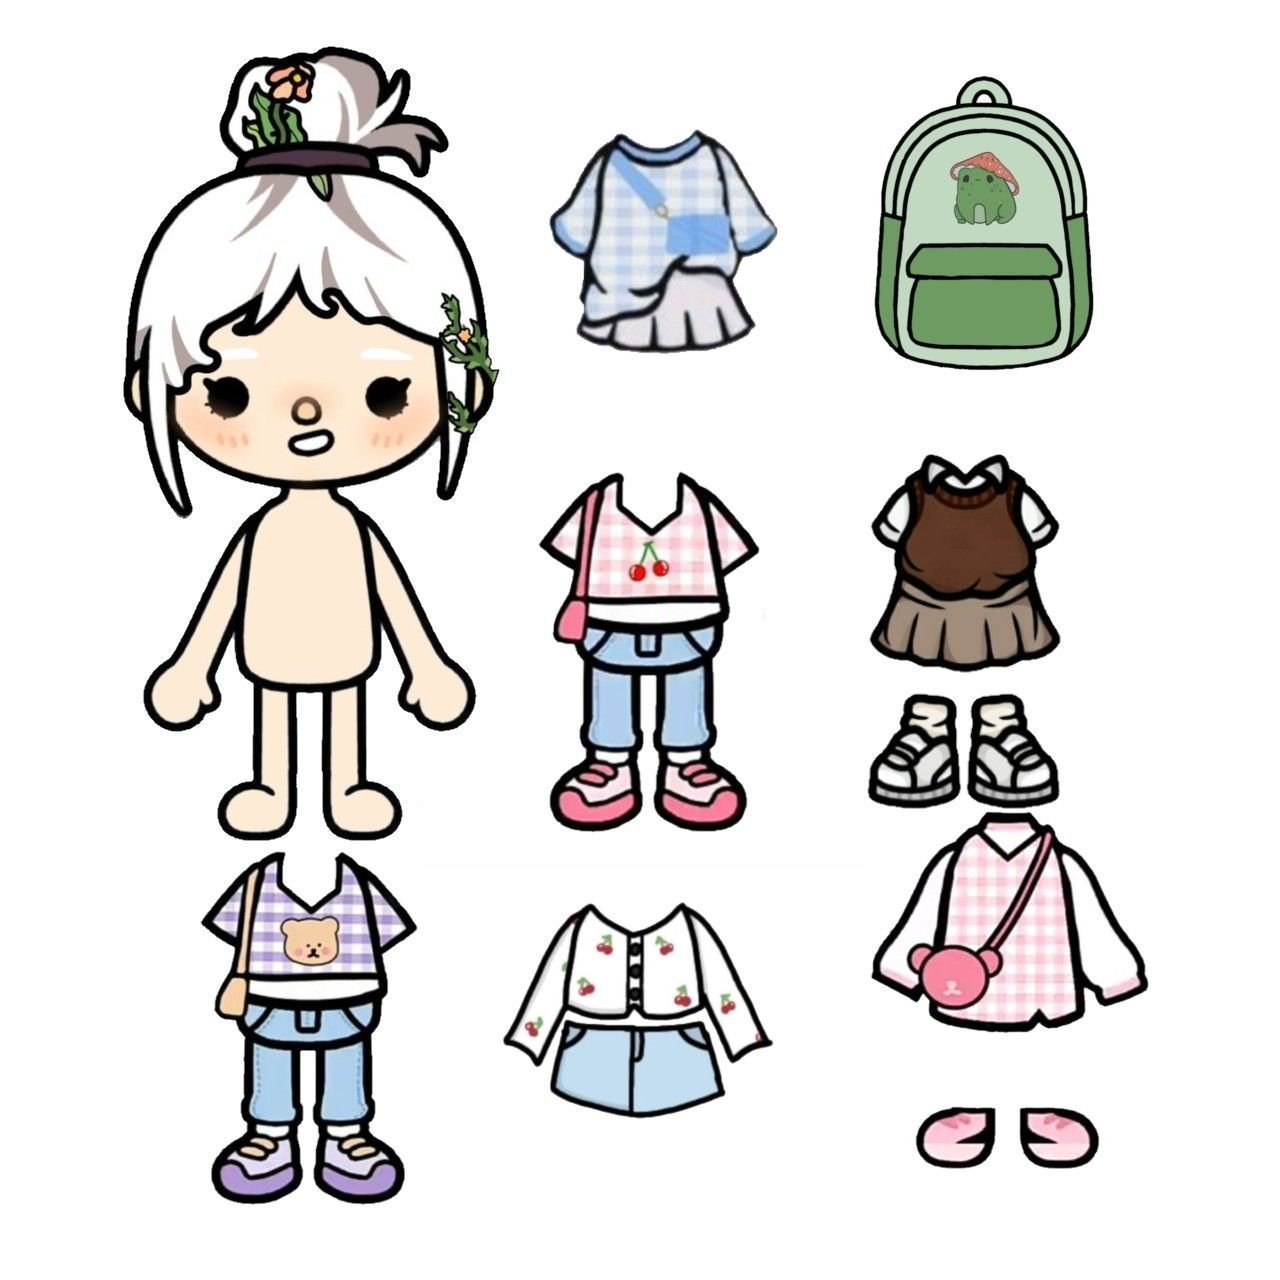 Кукла toca boca. Одежда для кукол. Бумажные куколки. Бумажные куклы с одеждой.